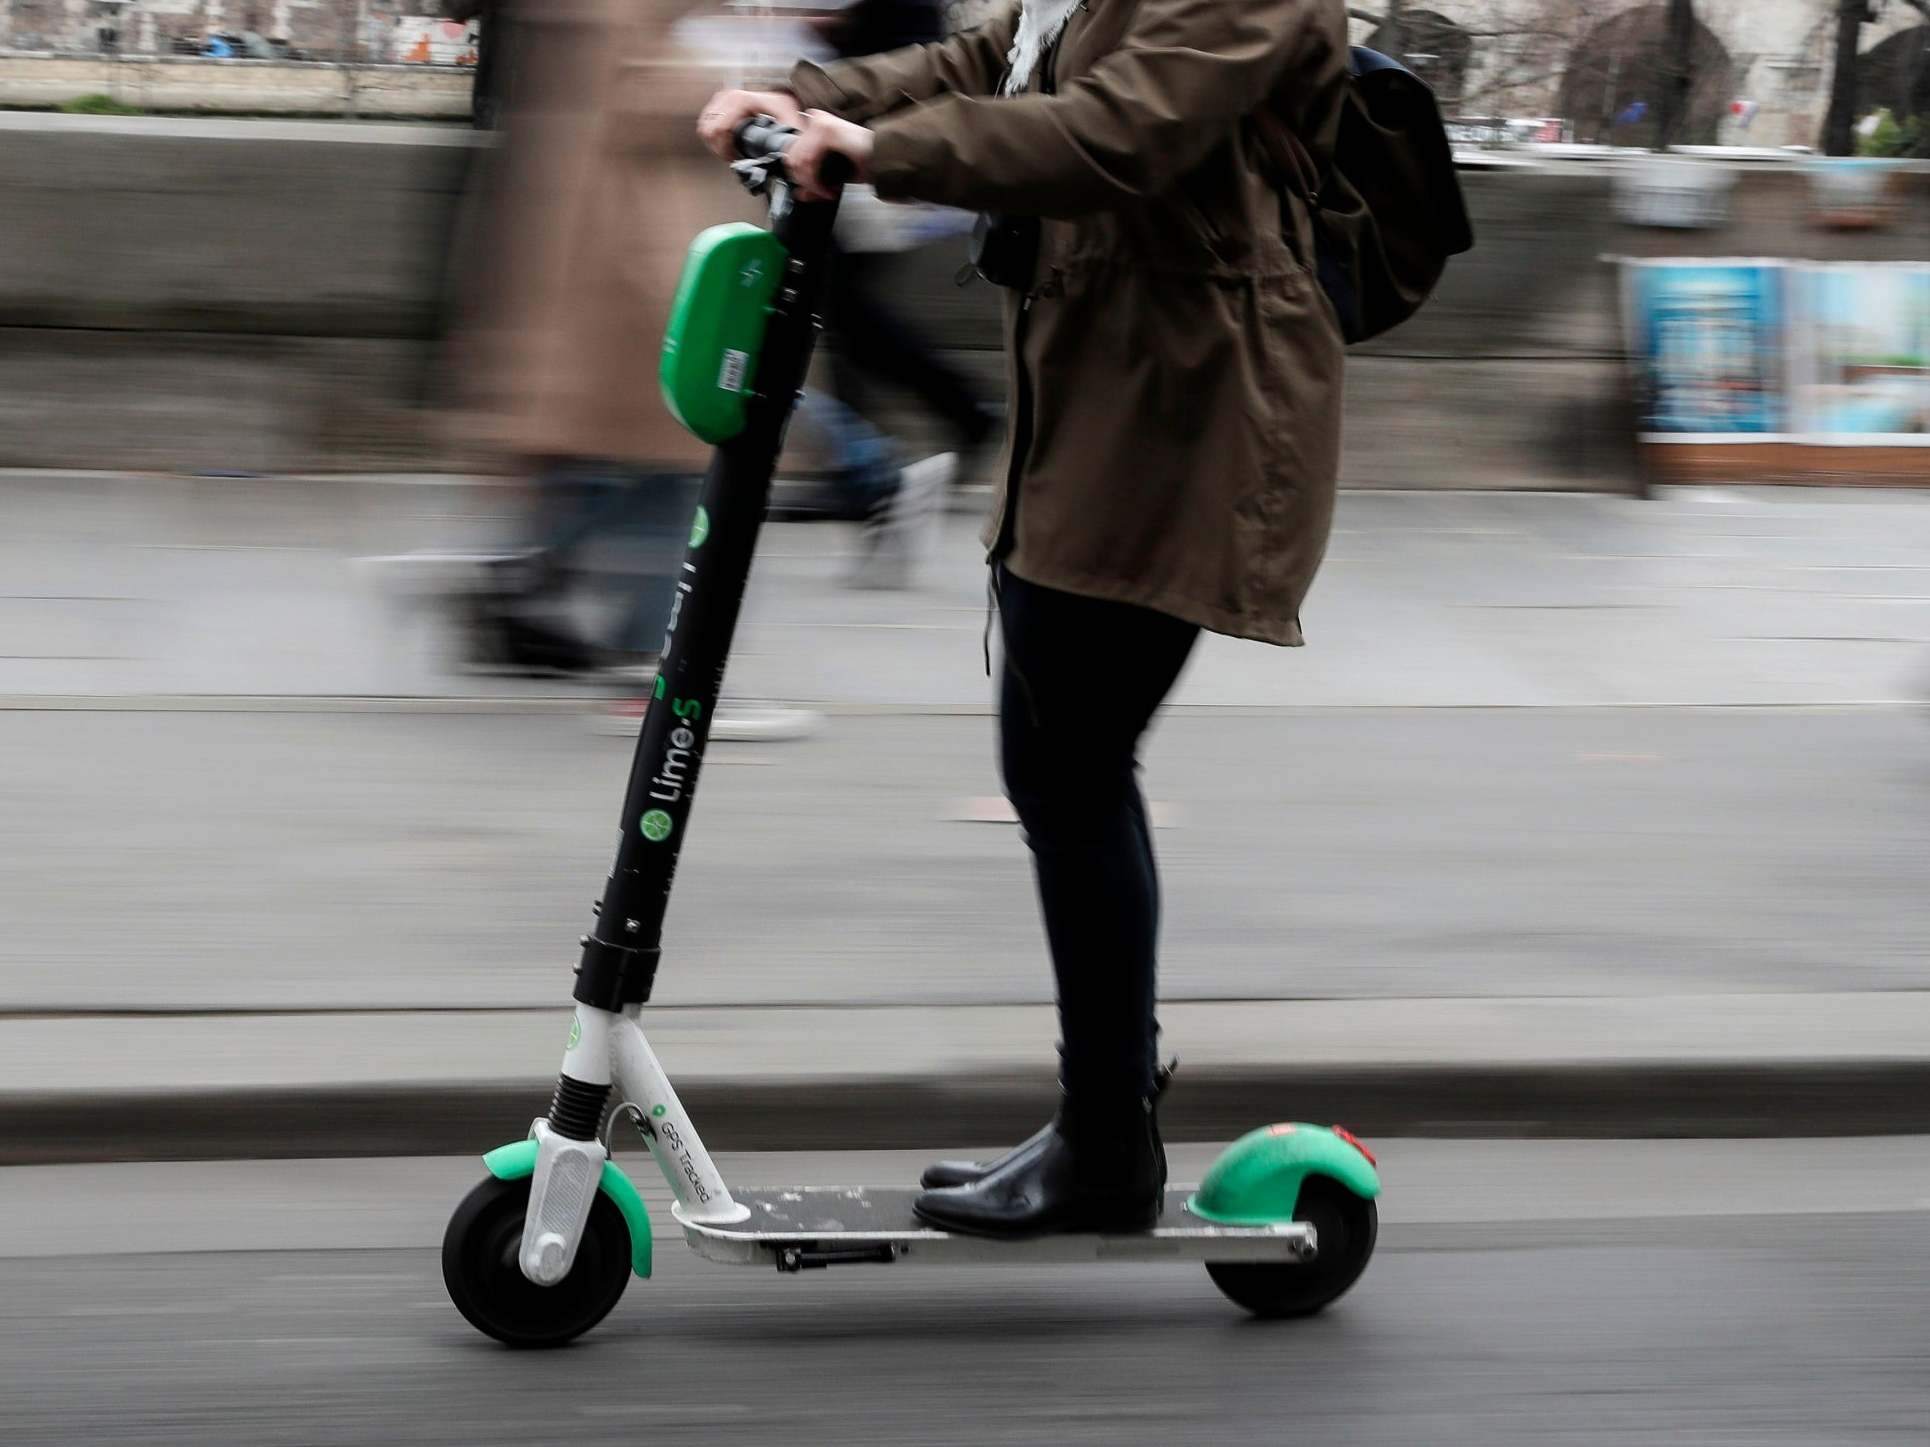 A rental e-scooter in Paris